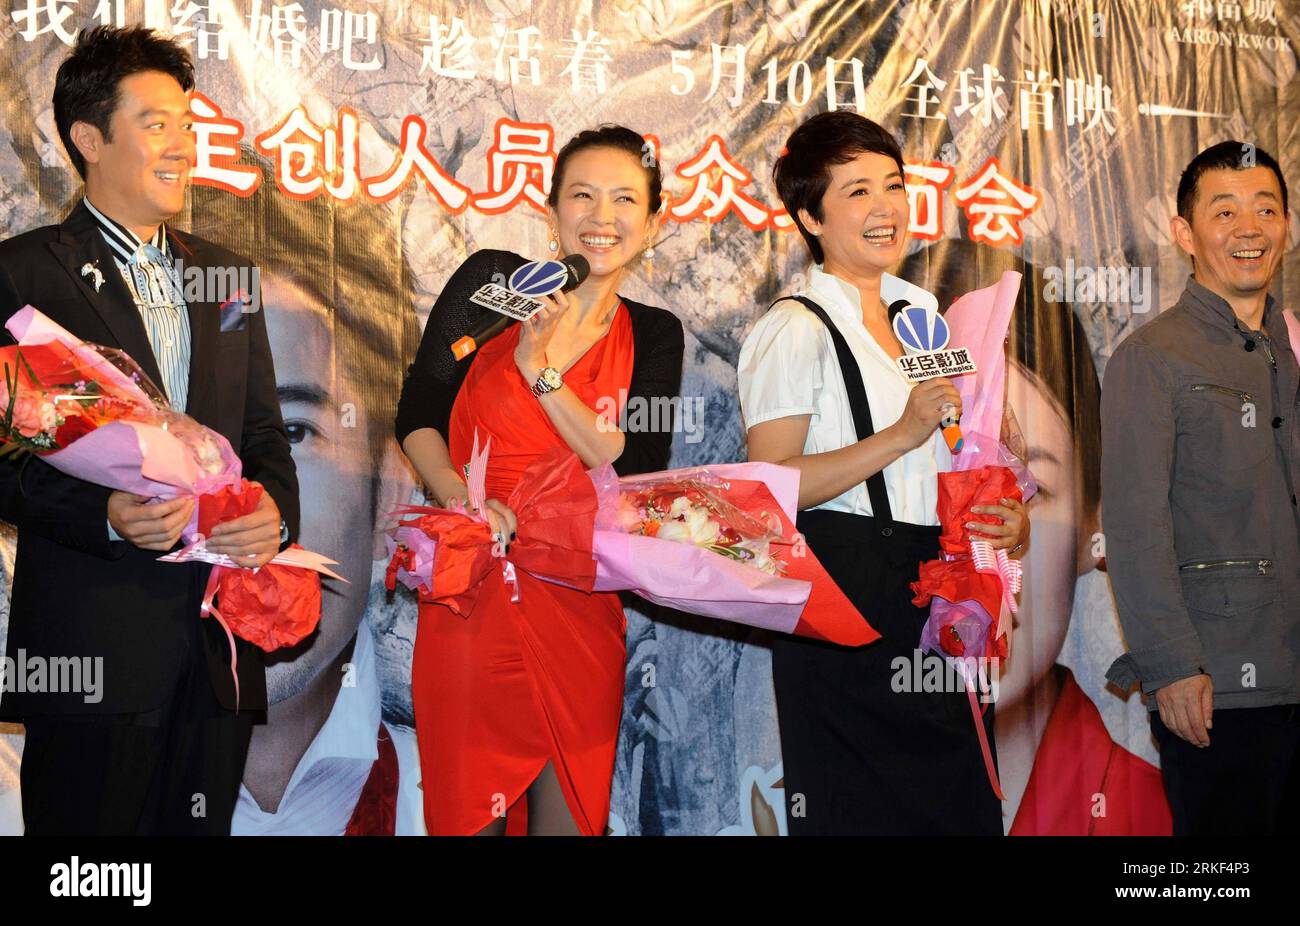 Bildnummer: 55344405 Datum: 13.05.2011 Copyright: imago/Xinhua (110513) -- SHENYANG, 13 maggio 2011 (Xinhua) -- gli attori Cai Guoqing (L), Zhang Ziyi (2nd L), Jiang Wenli (2nd R) e il regista GU Changwei partecipano a una conferenza stampa per promuovere il loro nuovo film Till Death Do Us Part a Shenyang, capitale della provincia di Liaoning della Cina nordorientale, il 13 maggio 2011. (Xinhua/li Gang) (zn) CHINA-LIAONING-SHENYANG-ENTERTAINMENT-FILM-TILL DEATH DO US PART (CN) PUBLICATIONxNOTxINxCHN Entertainment People Film Filmpremiere kbdig xcb 2011 quer Bildnummer 55344405 Data 13 05 2011 Copyright Imago XINHUA Shenyang maggio Foto Stock